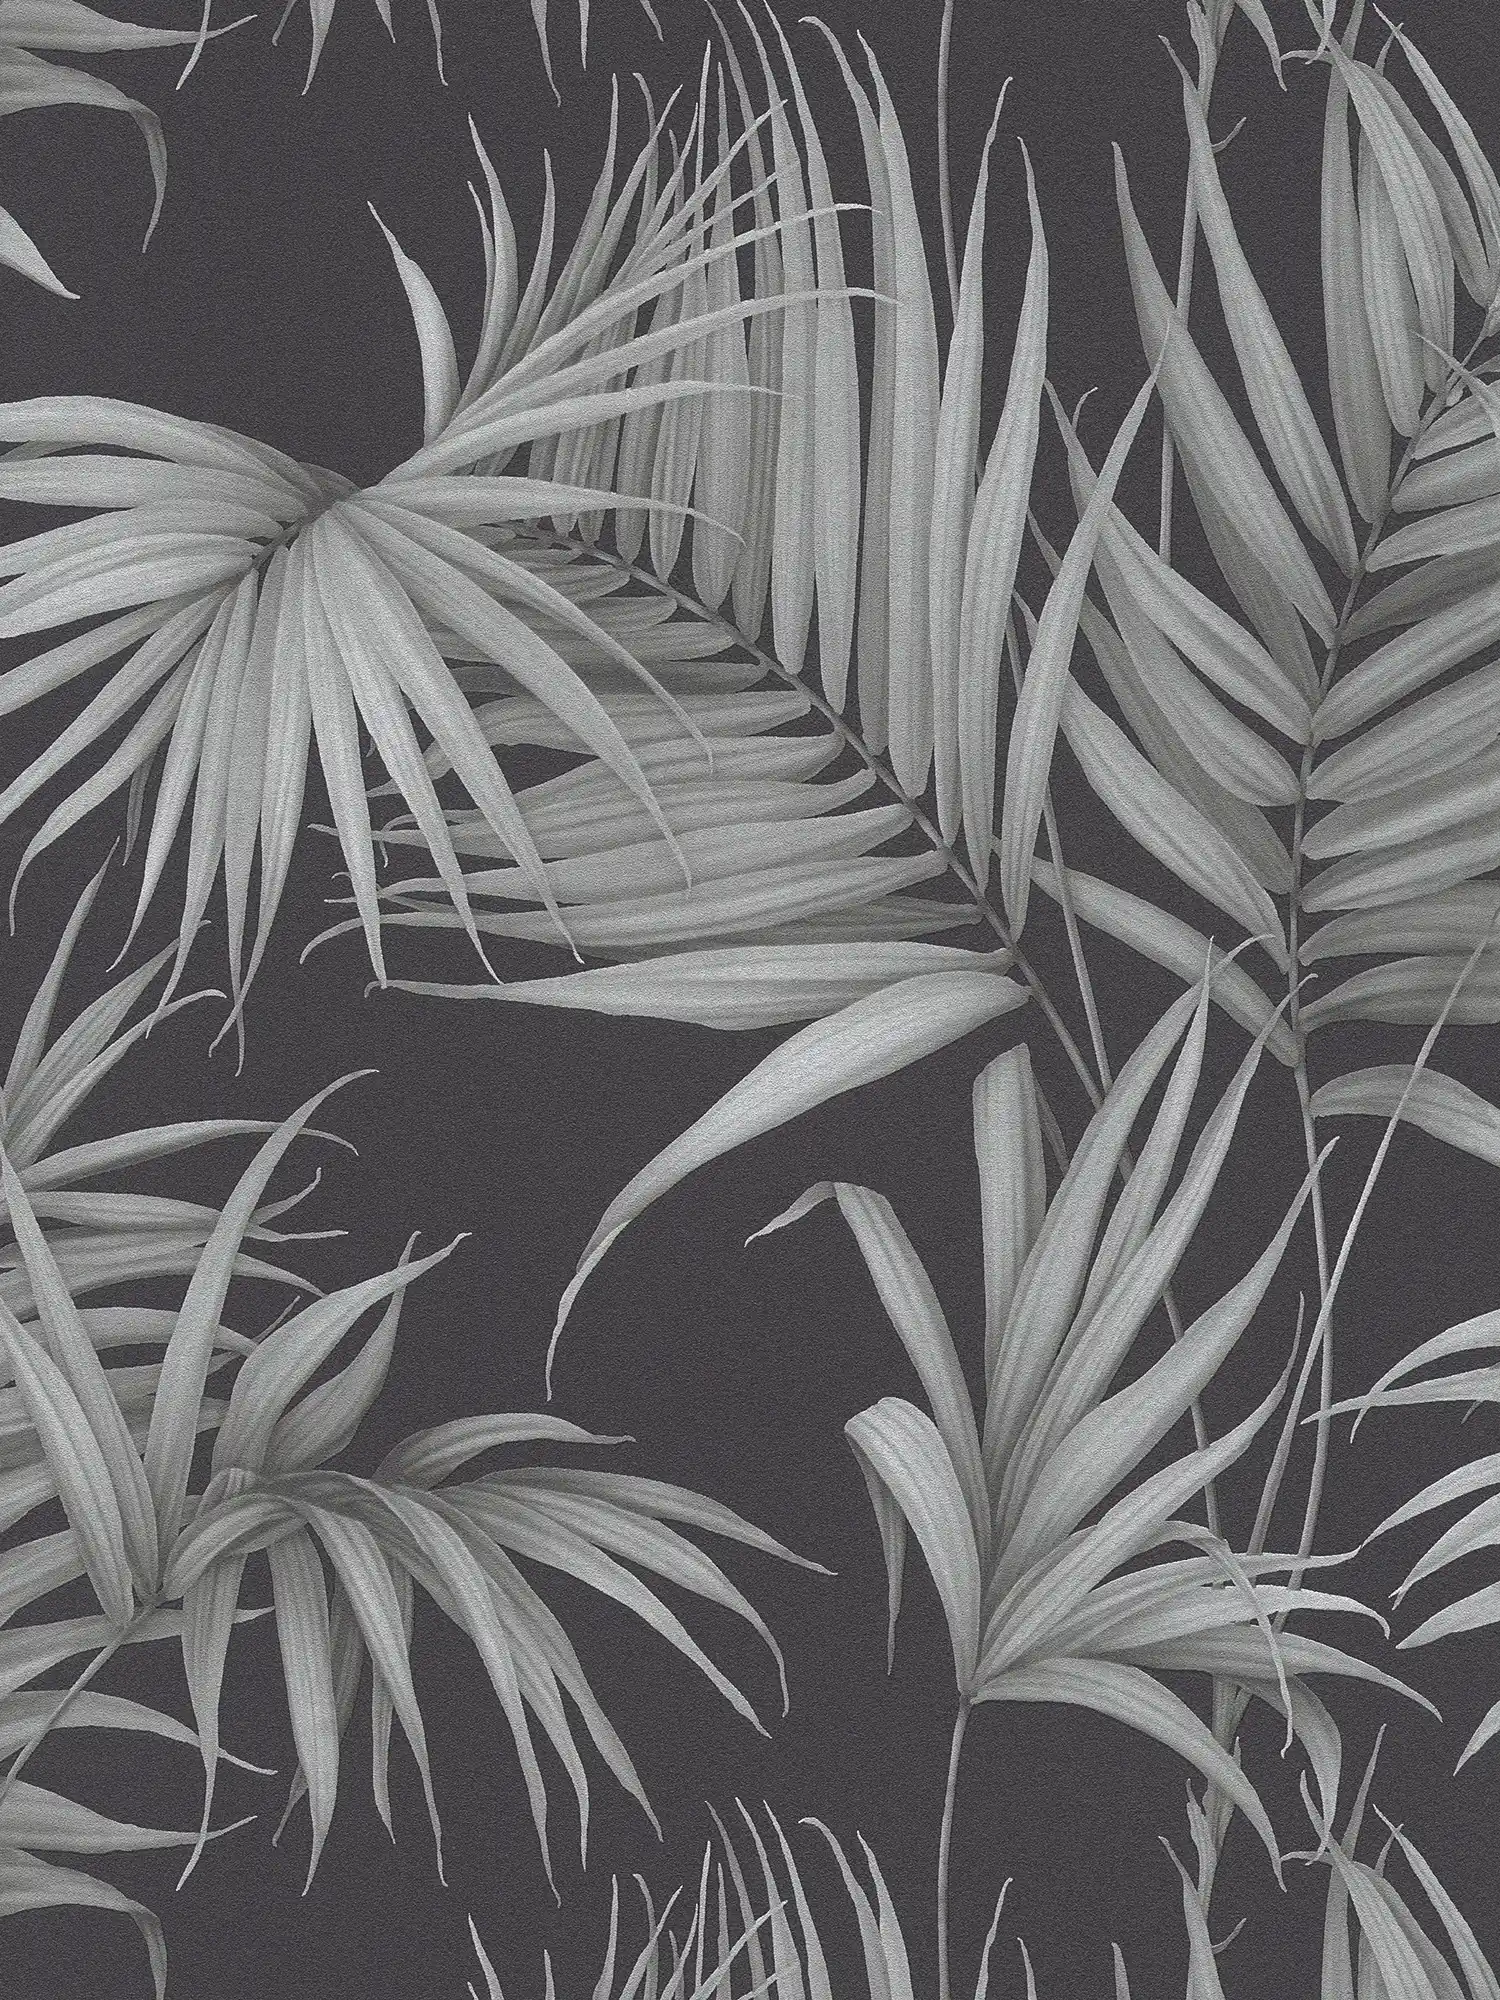 Tropische Tapete mit Farn-Blättern – Grau, Schwarz
